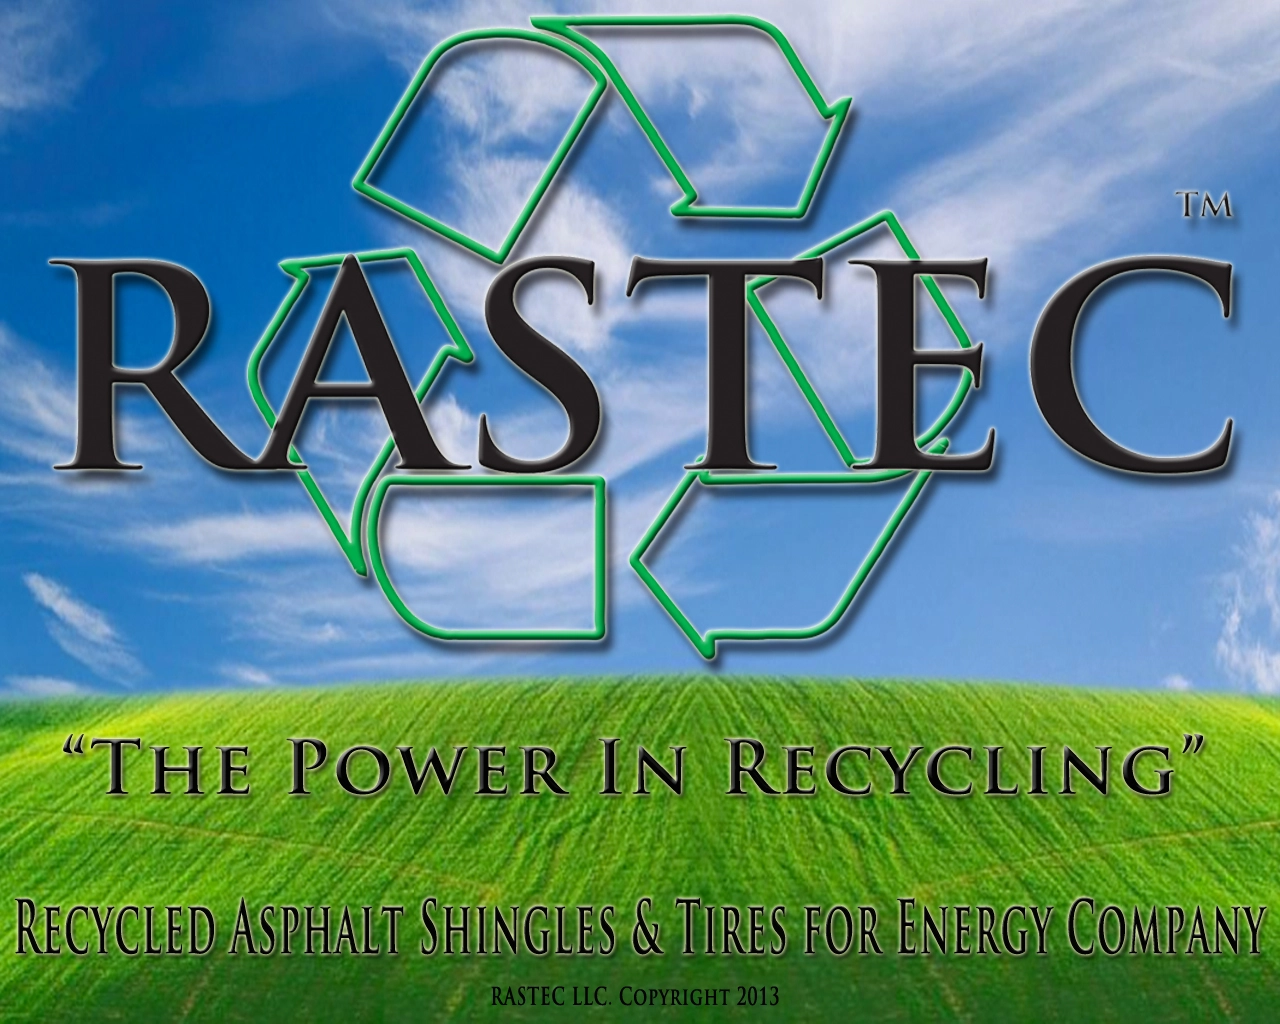 Rastec LLC